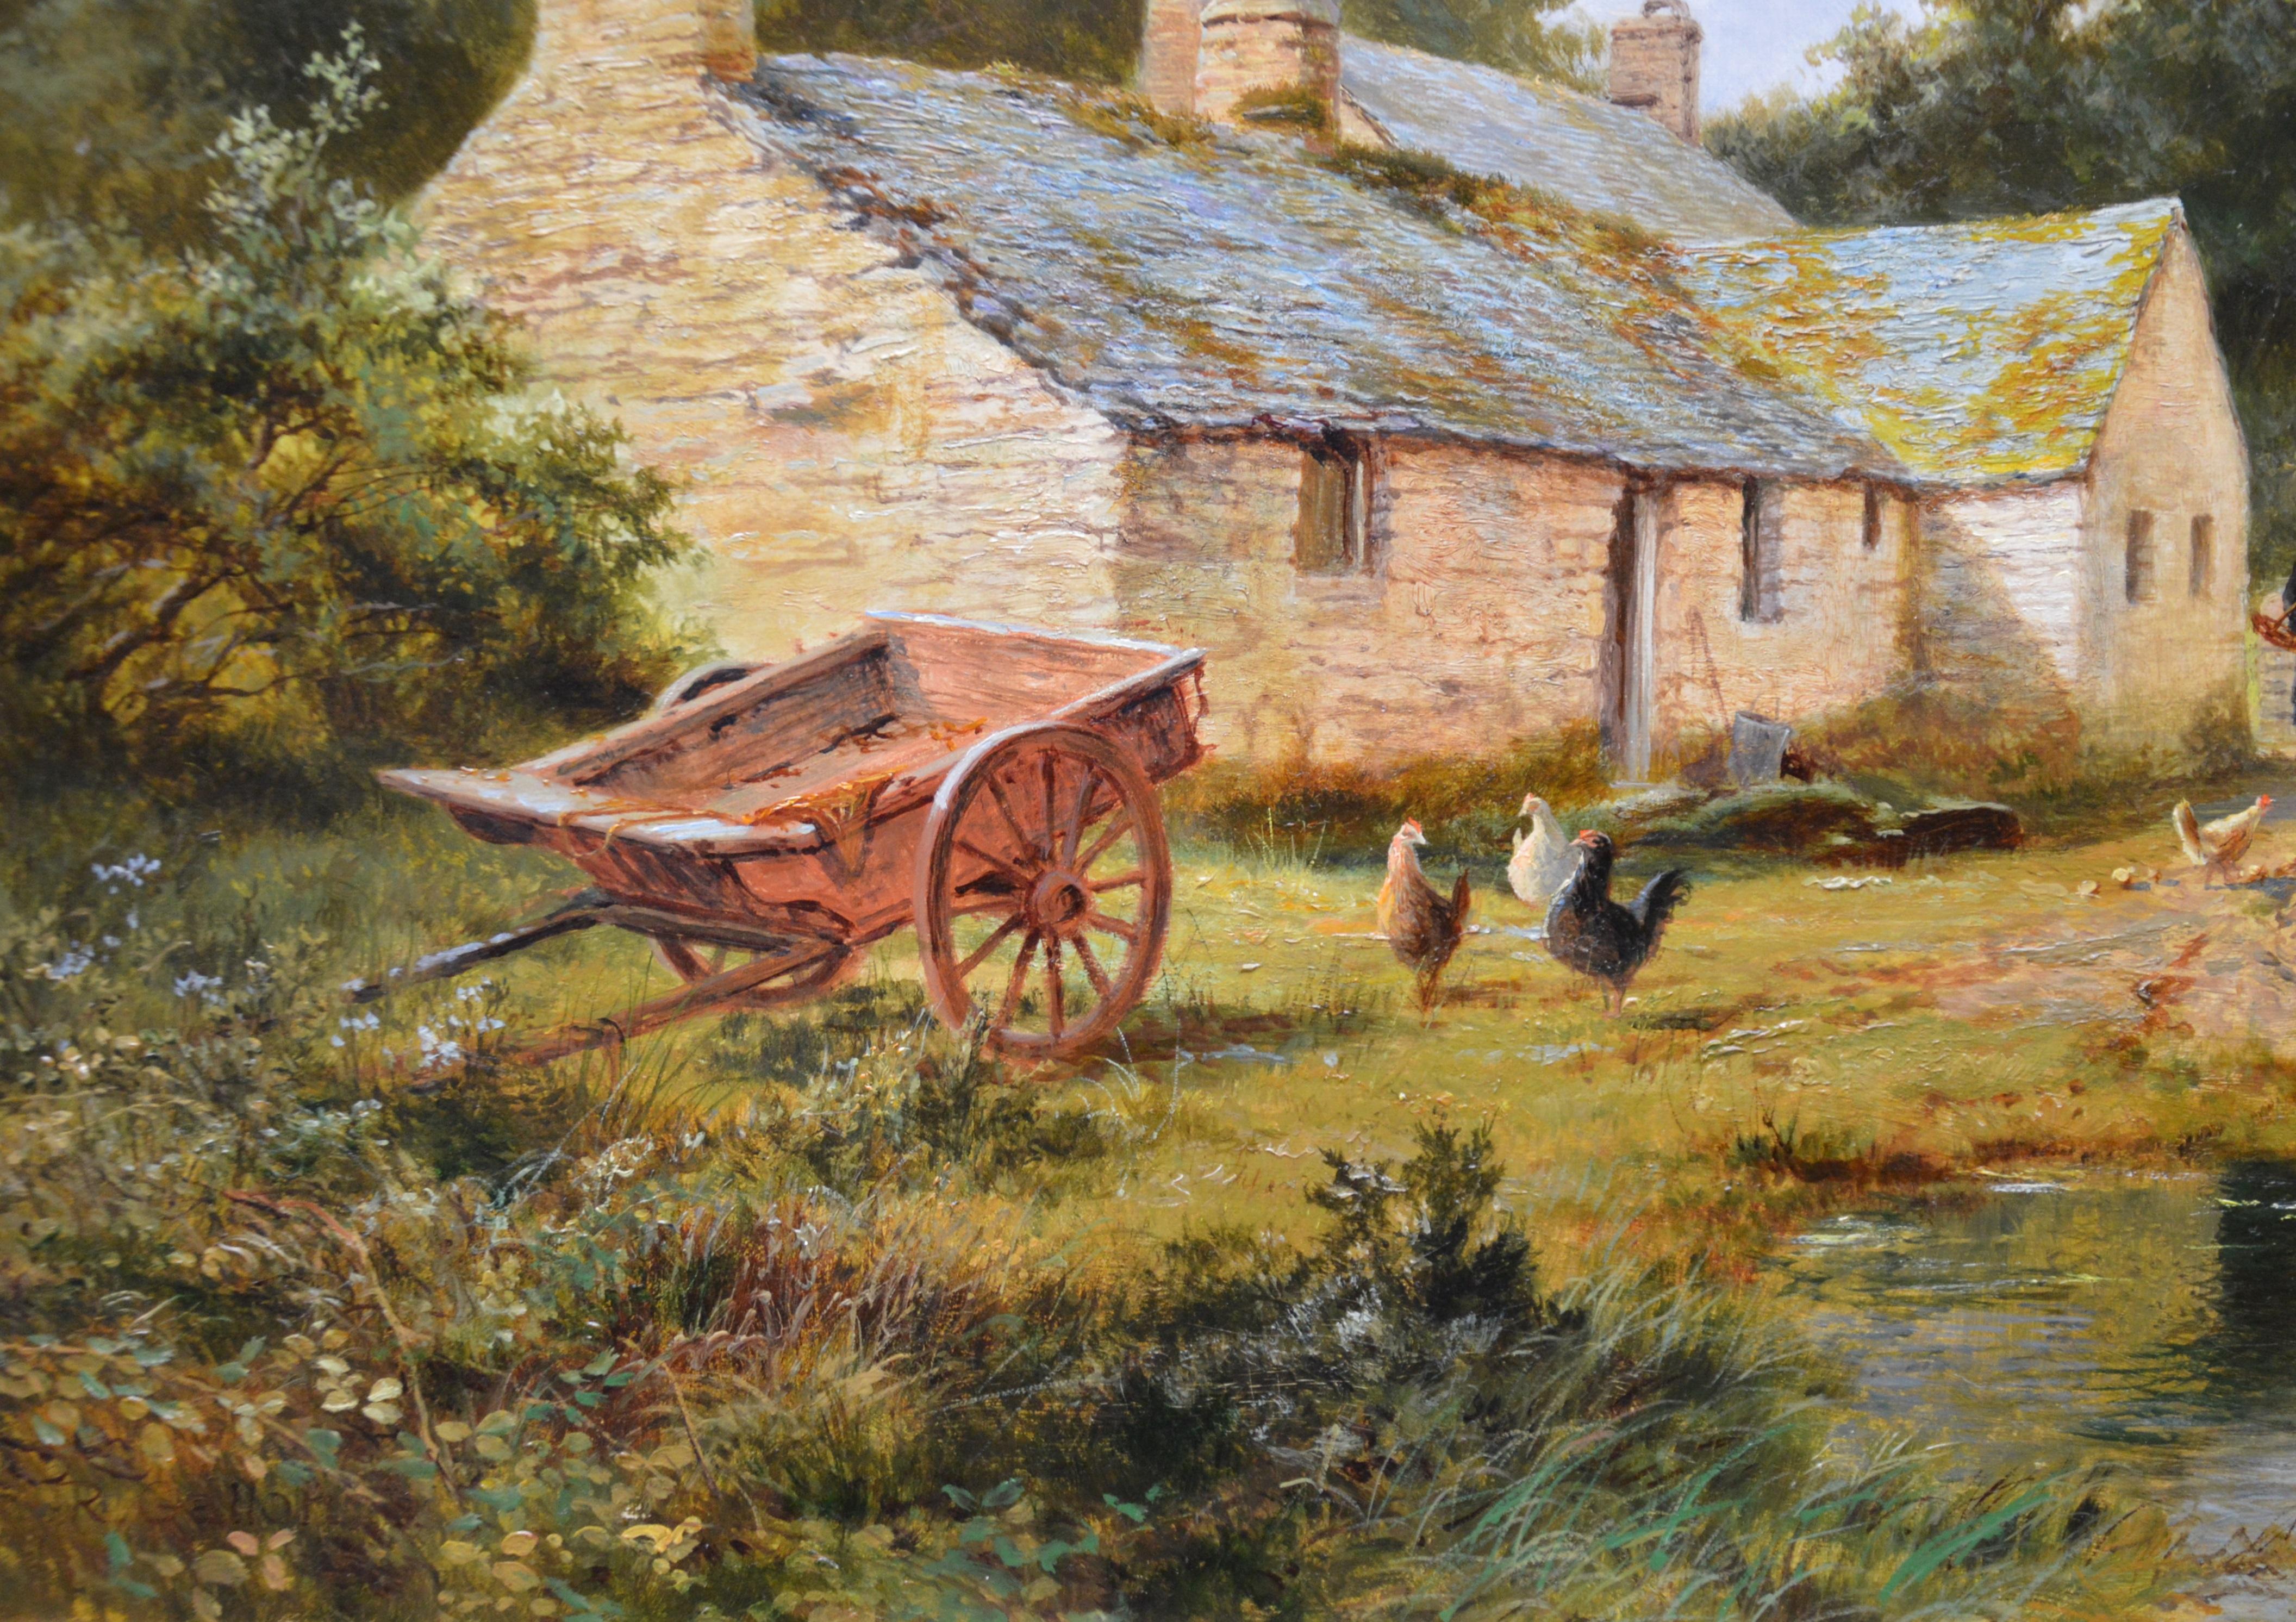 La vallée du Lledr - Paysage d'été du 19e siècle - Peinture à l'huile de Snowdonia, Pays de Galles 2